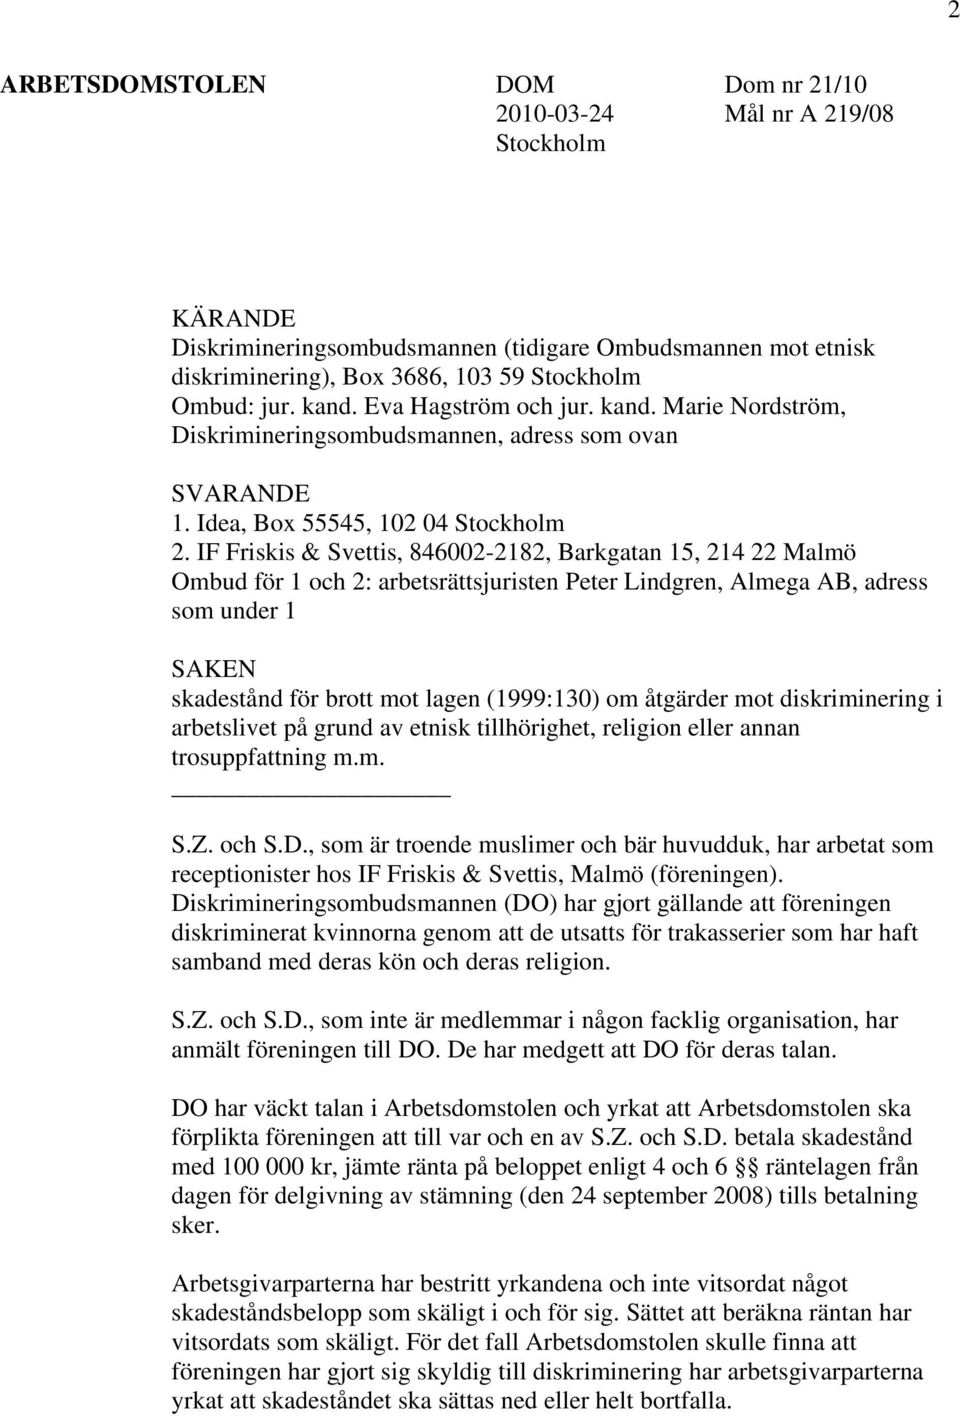 IF Friskis & Svettis, 846002-2182, Barkgatan 15, 214 22 Malmö Ombud för 1 och 2: arbetsrättsjuristen Peter Lindgren, Almega AB, adress som under 1 SAKEN skadestånd för brott mot lagen (1999:130) om